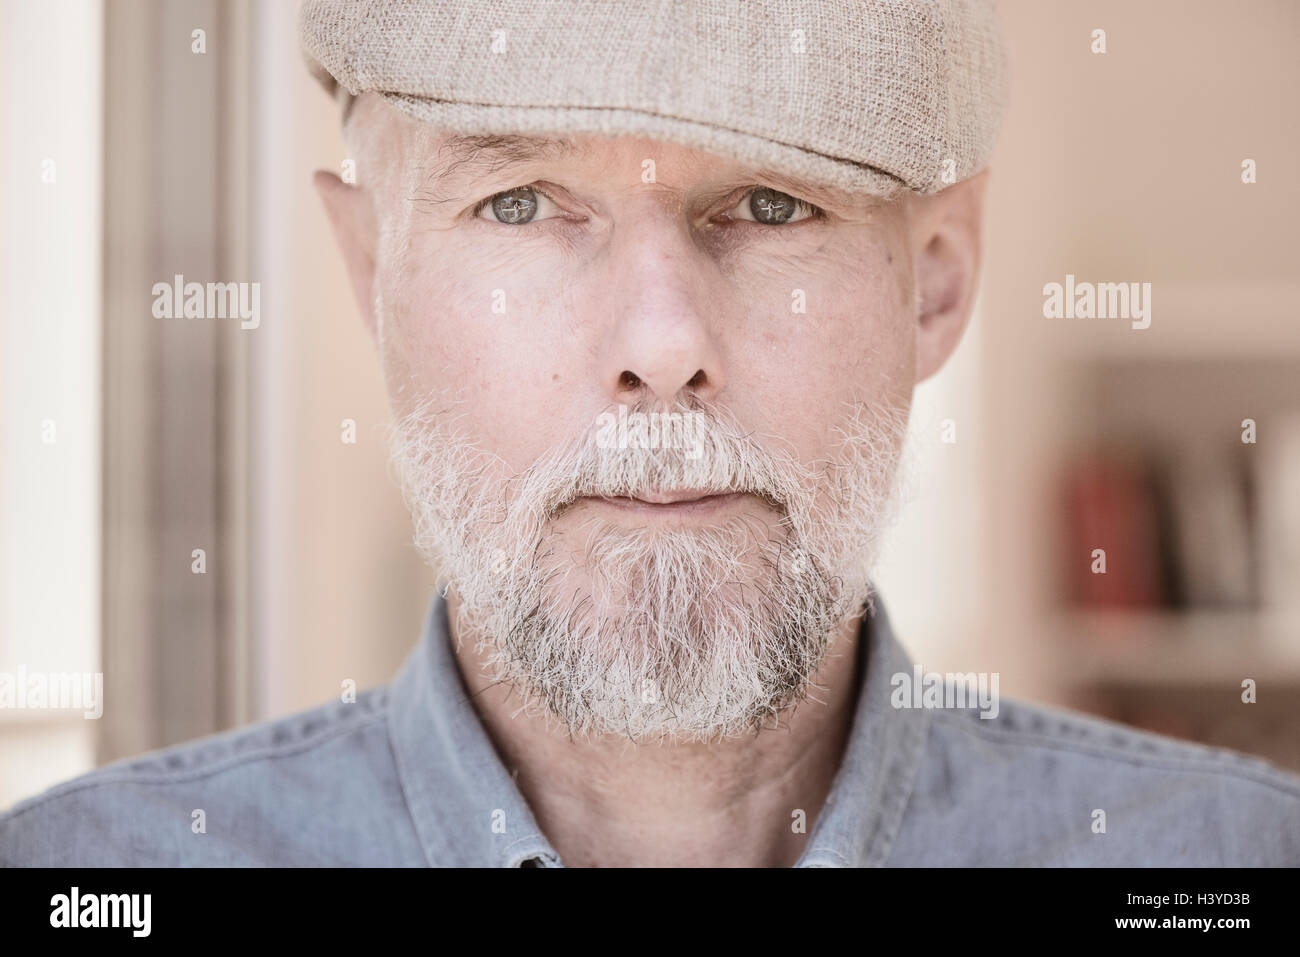 Ritratto di vecchio uomo guardando la fotocamera. Gravi e determinate espressioni facciali. Foto Stock